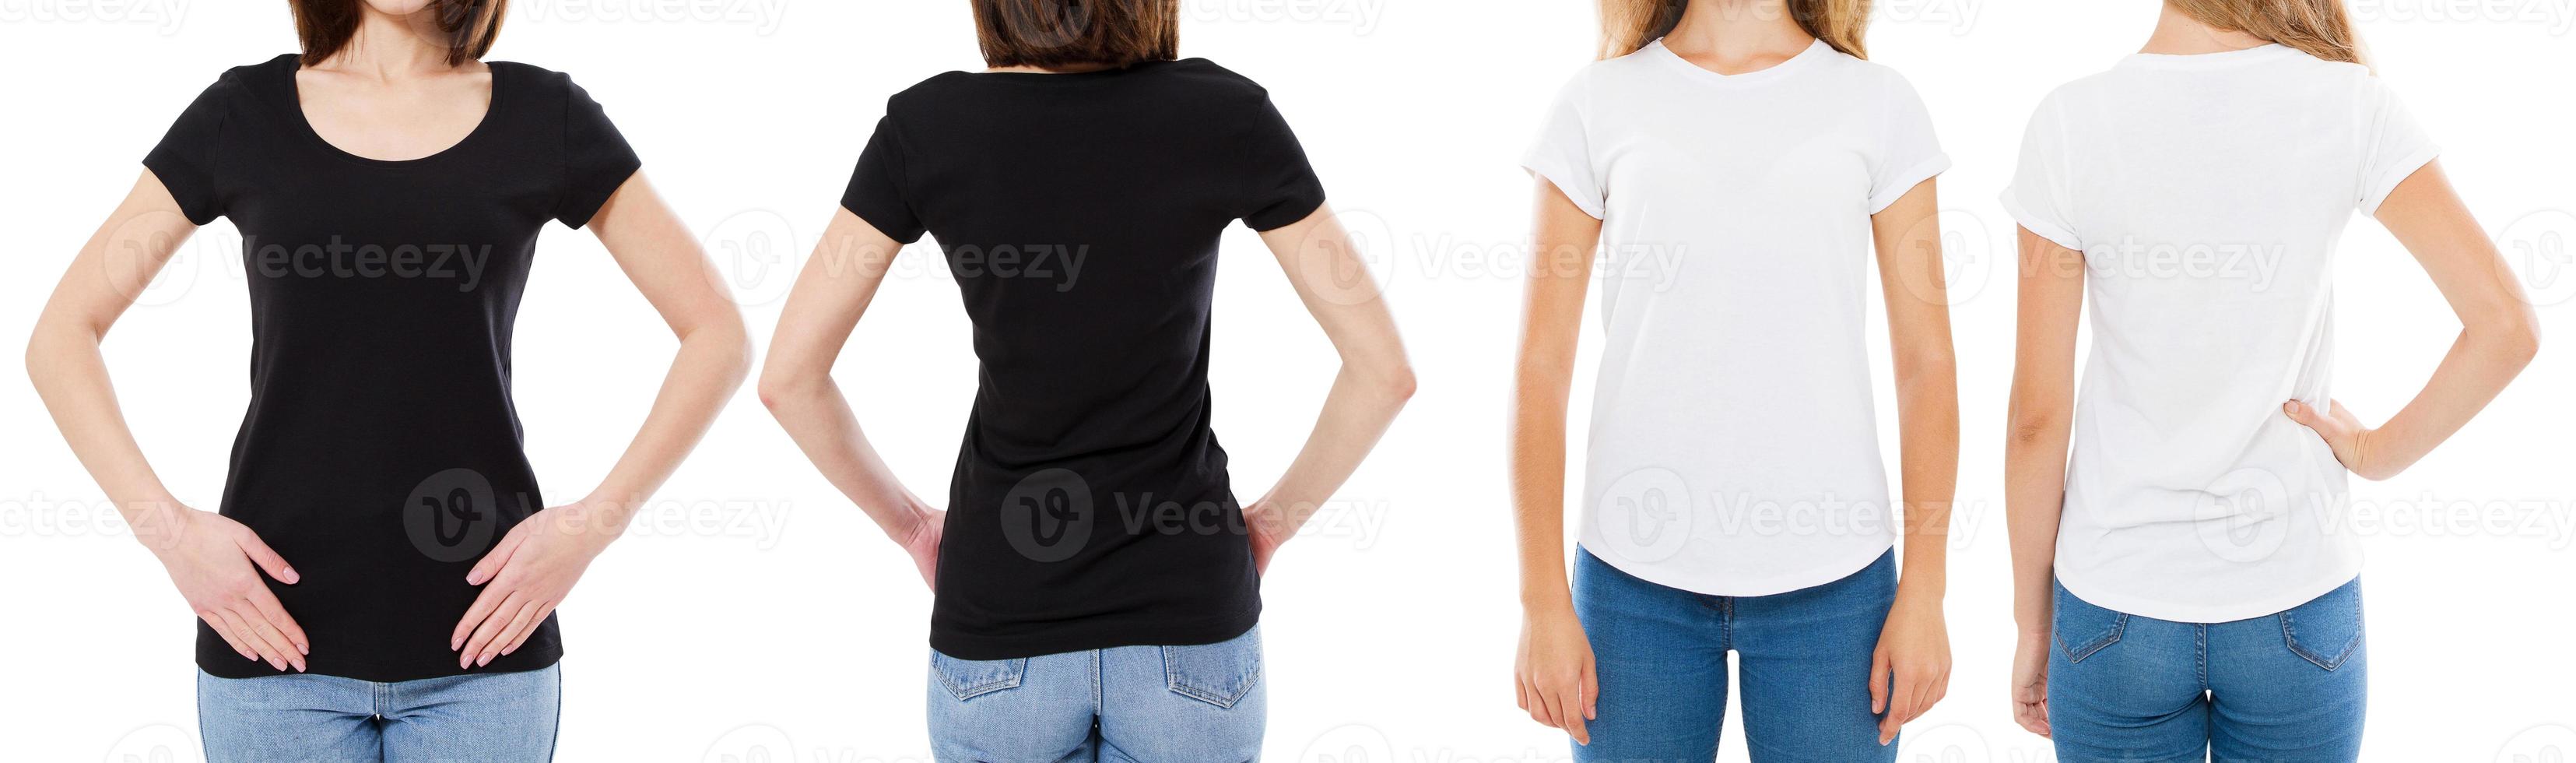 vrouw in wit en zwart t-shirt geïsoleerd voor- en achteraanzicht bijgesneden afbeelding lege t-shirt opties, meisje in tshirt set. spotten. shirtontwerp en mensenconcept. foto